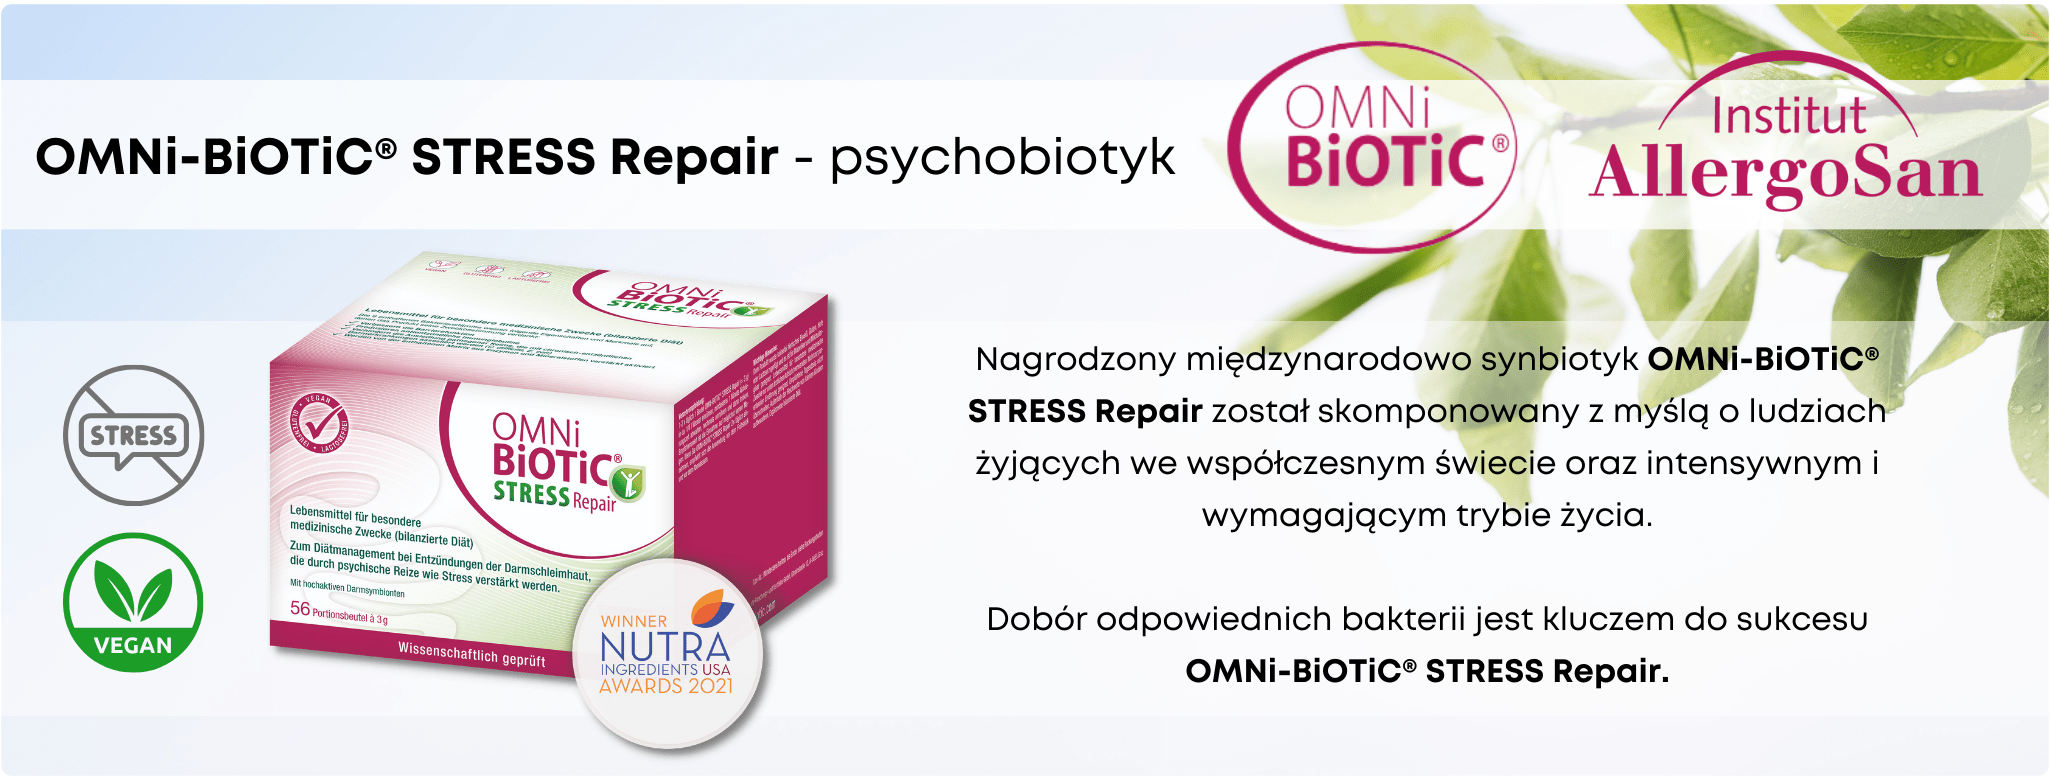 Omni-Biotic 9 Stress Repair